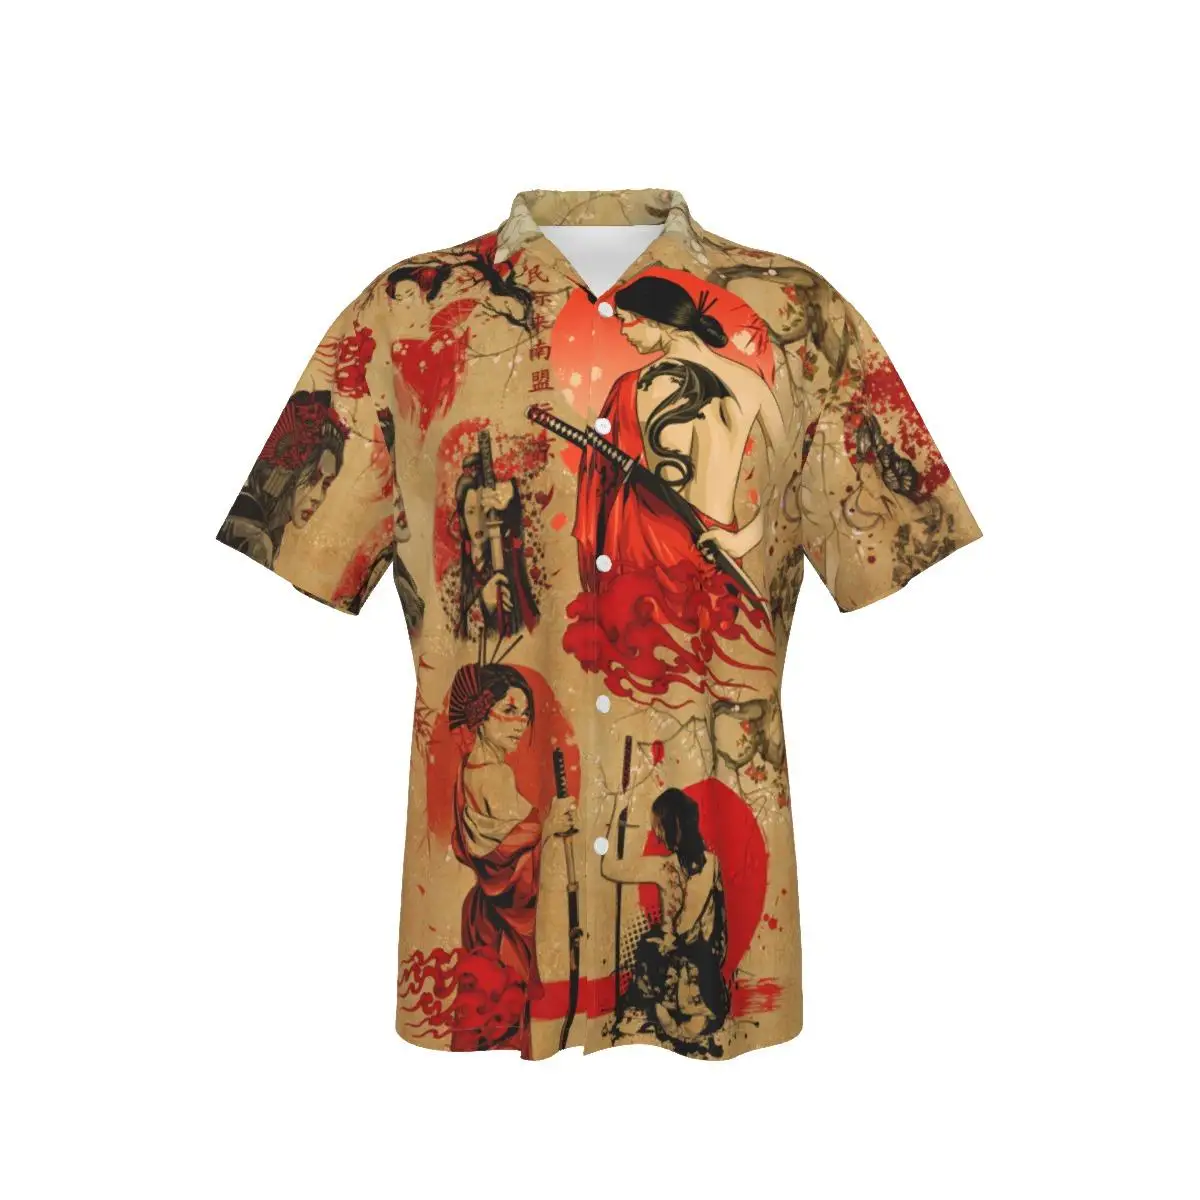 

Men's Hawaiian Shirt Japan Swordswoman Cool Print Beach Short Sleeve Summer Casual Button Up Patchwork Tops 3D Shirts